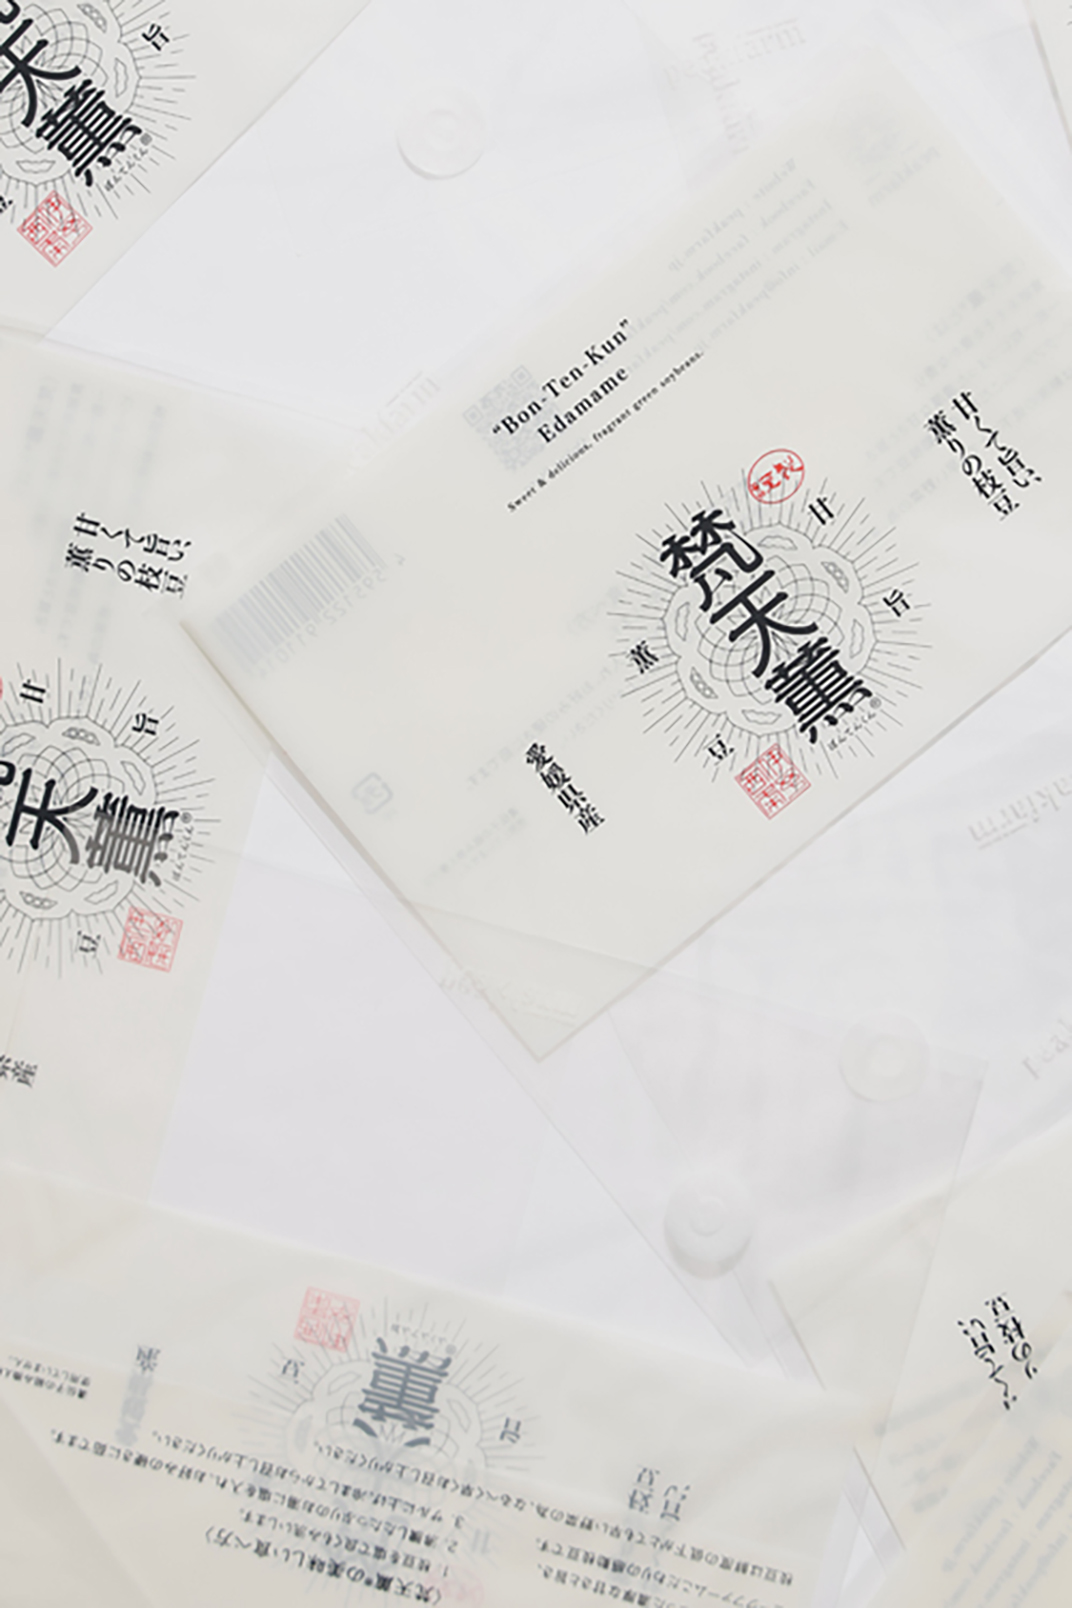 梵天薫品牌logo设计 日本 深圳 上海 北京 广州 武汉 咖啡店 餐饮商业 logo设计 vi设计 空间设计